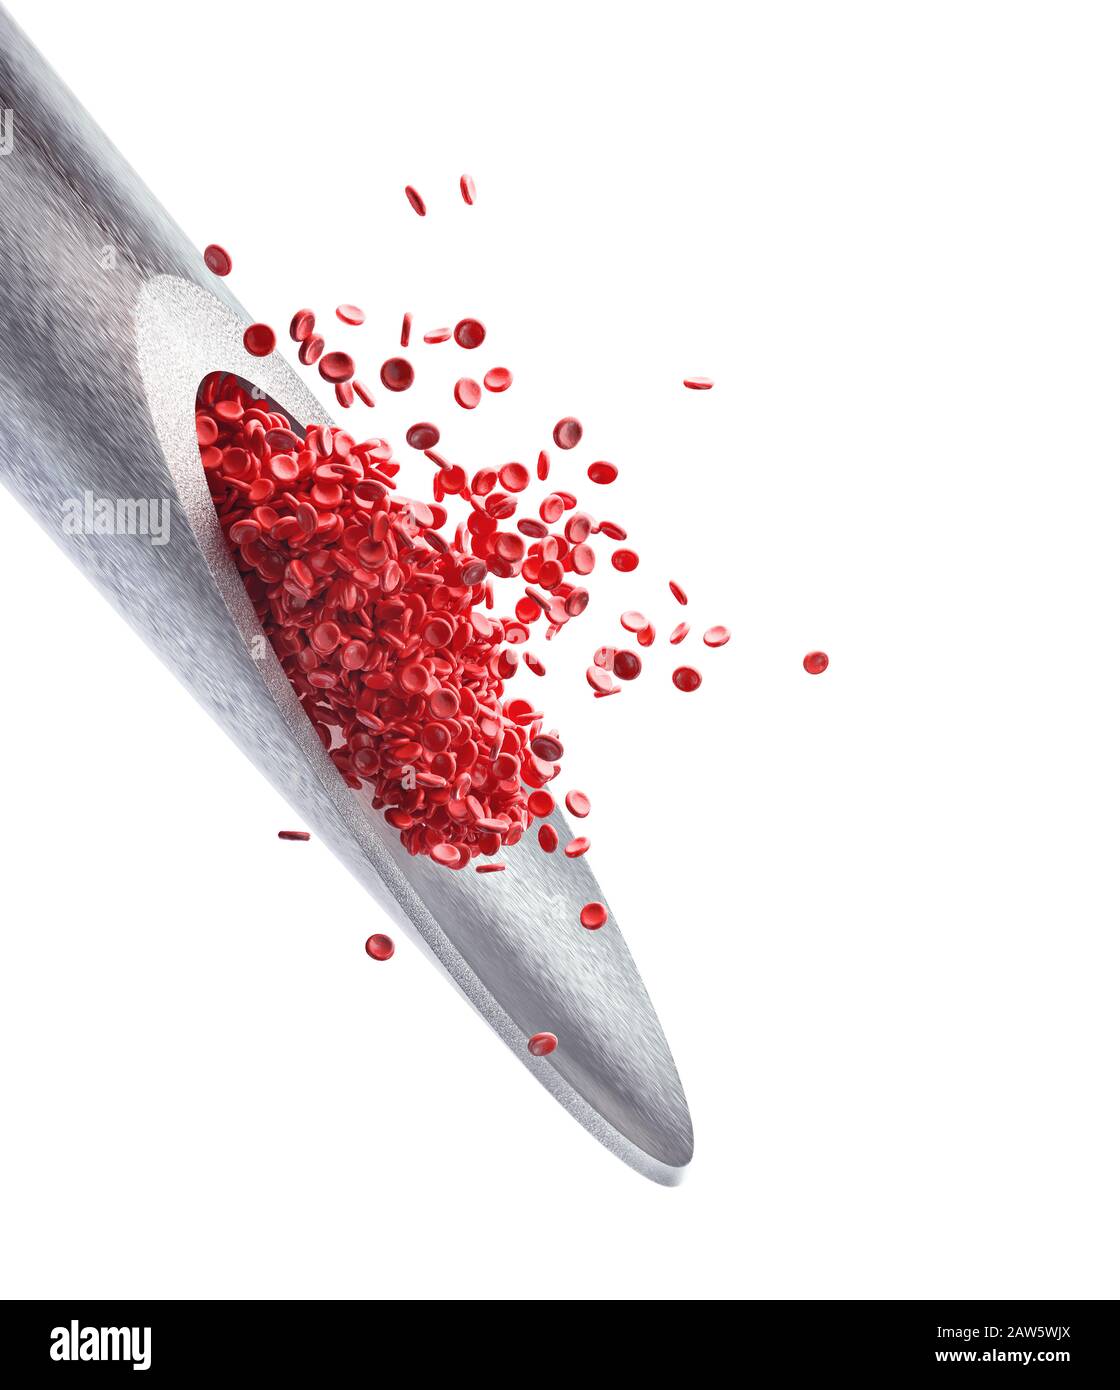 Injektionsnadel mit roten Blutkörperchen, die aus der Spitze hervorstehen. 3D-Illustration, Konzeptbild der Medizin und wissenschaftliche Studien. Beschneidungspfad inklusive Stockfoto